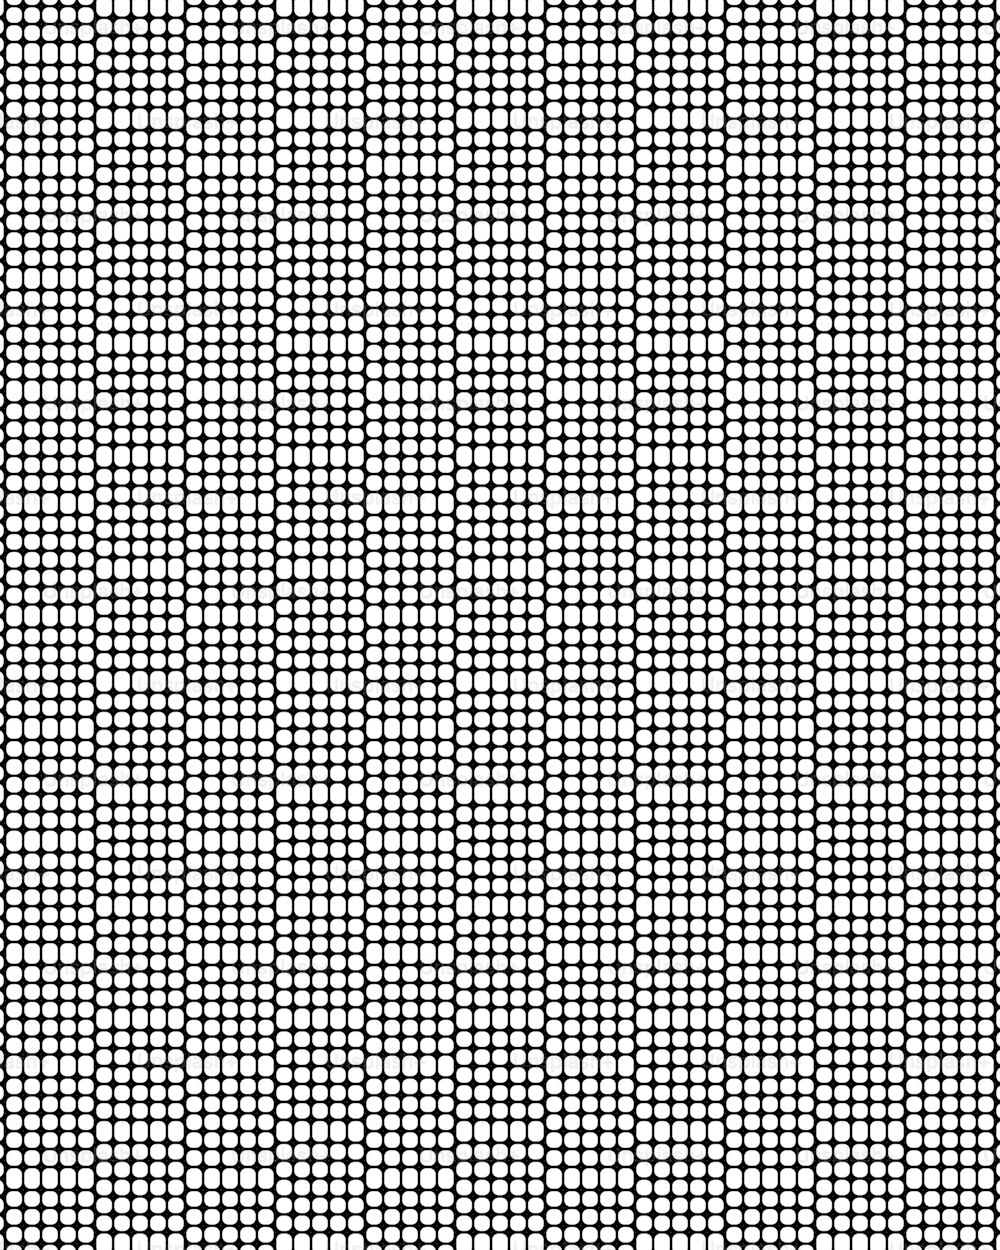 Un patrón en blanco y negro de cuadrados pequeños